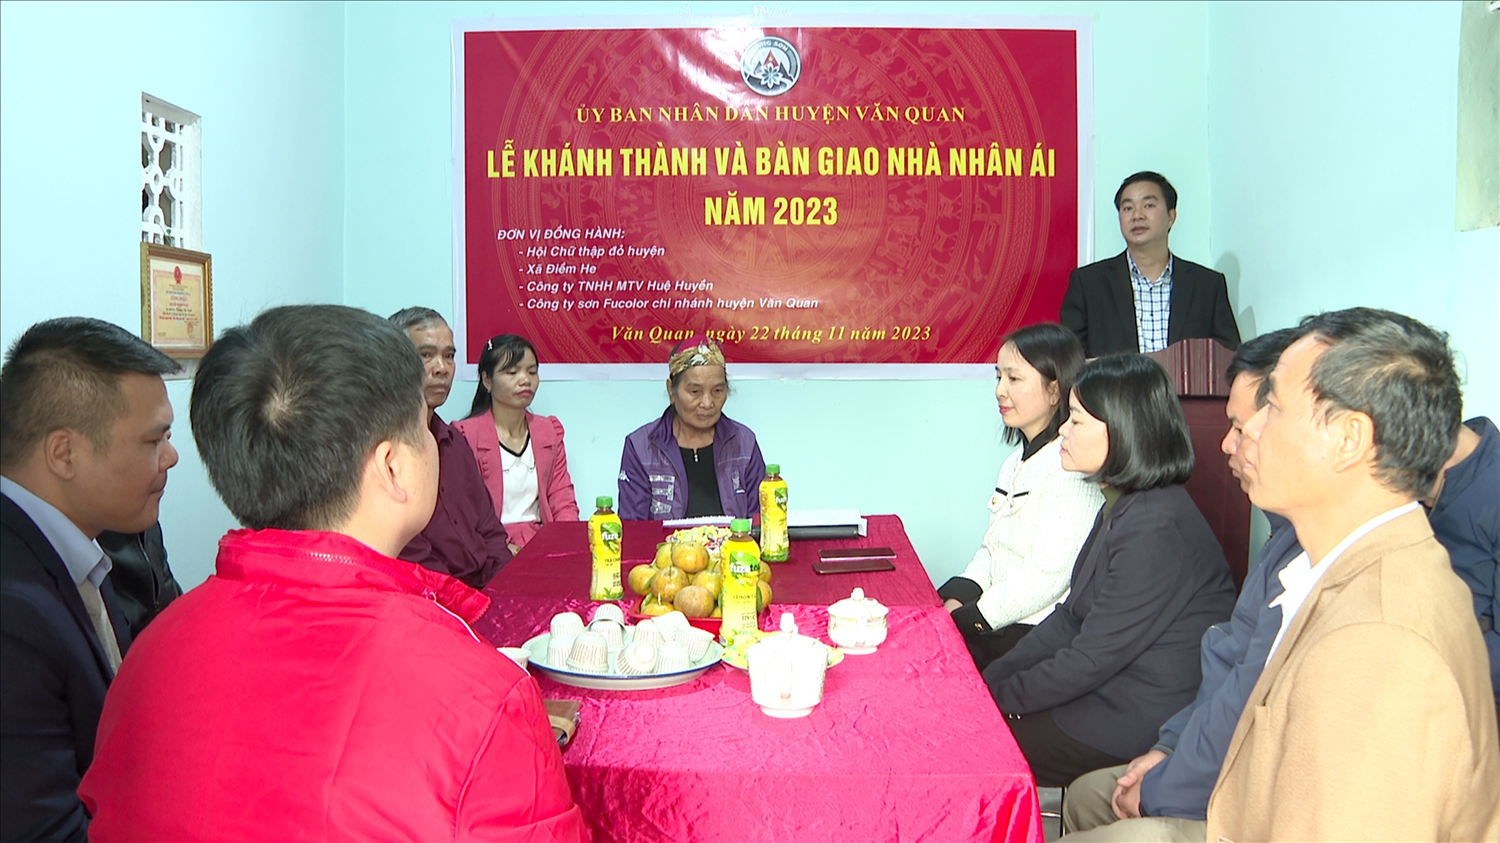 Lễ bàn giao nhà nhân ái cho gia đình bà Hoàng Thị Kim Oanh, thôn Nà Súng, xã Điềm He, huyện Văn Quan